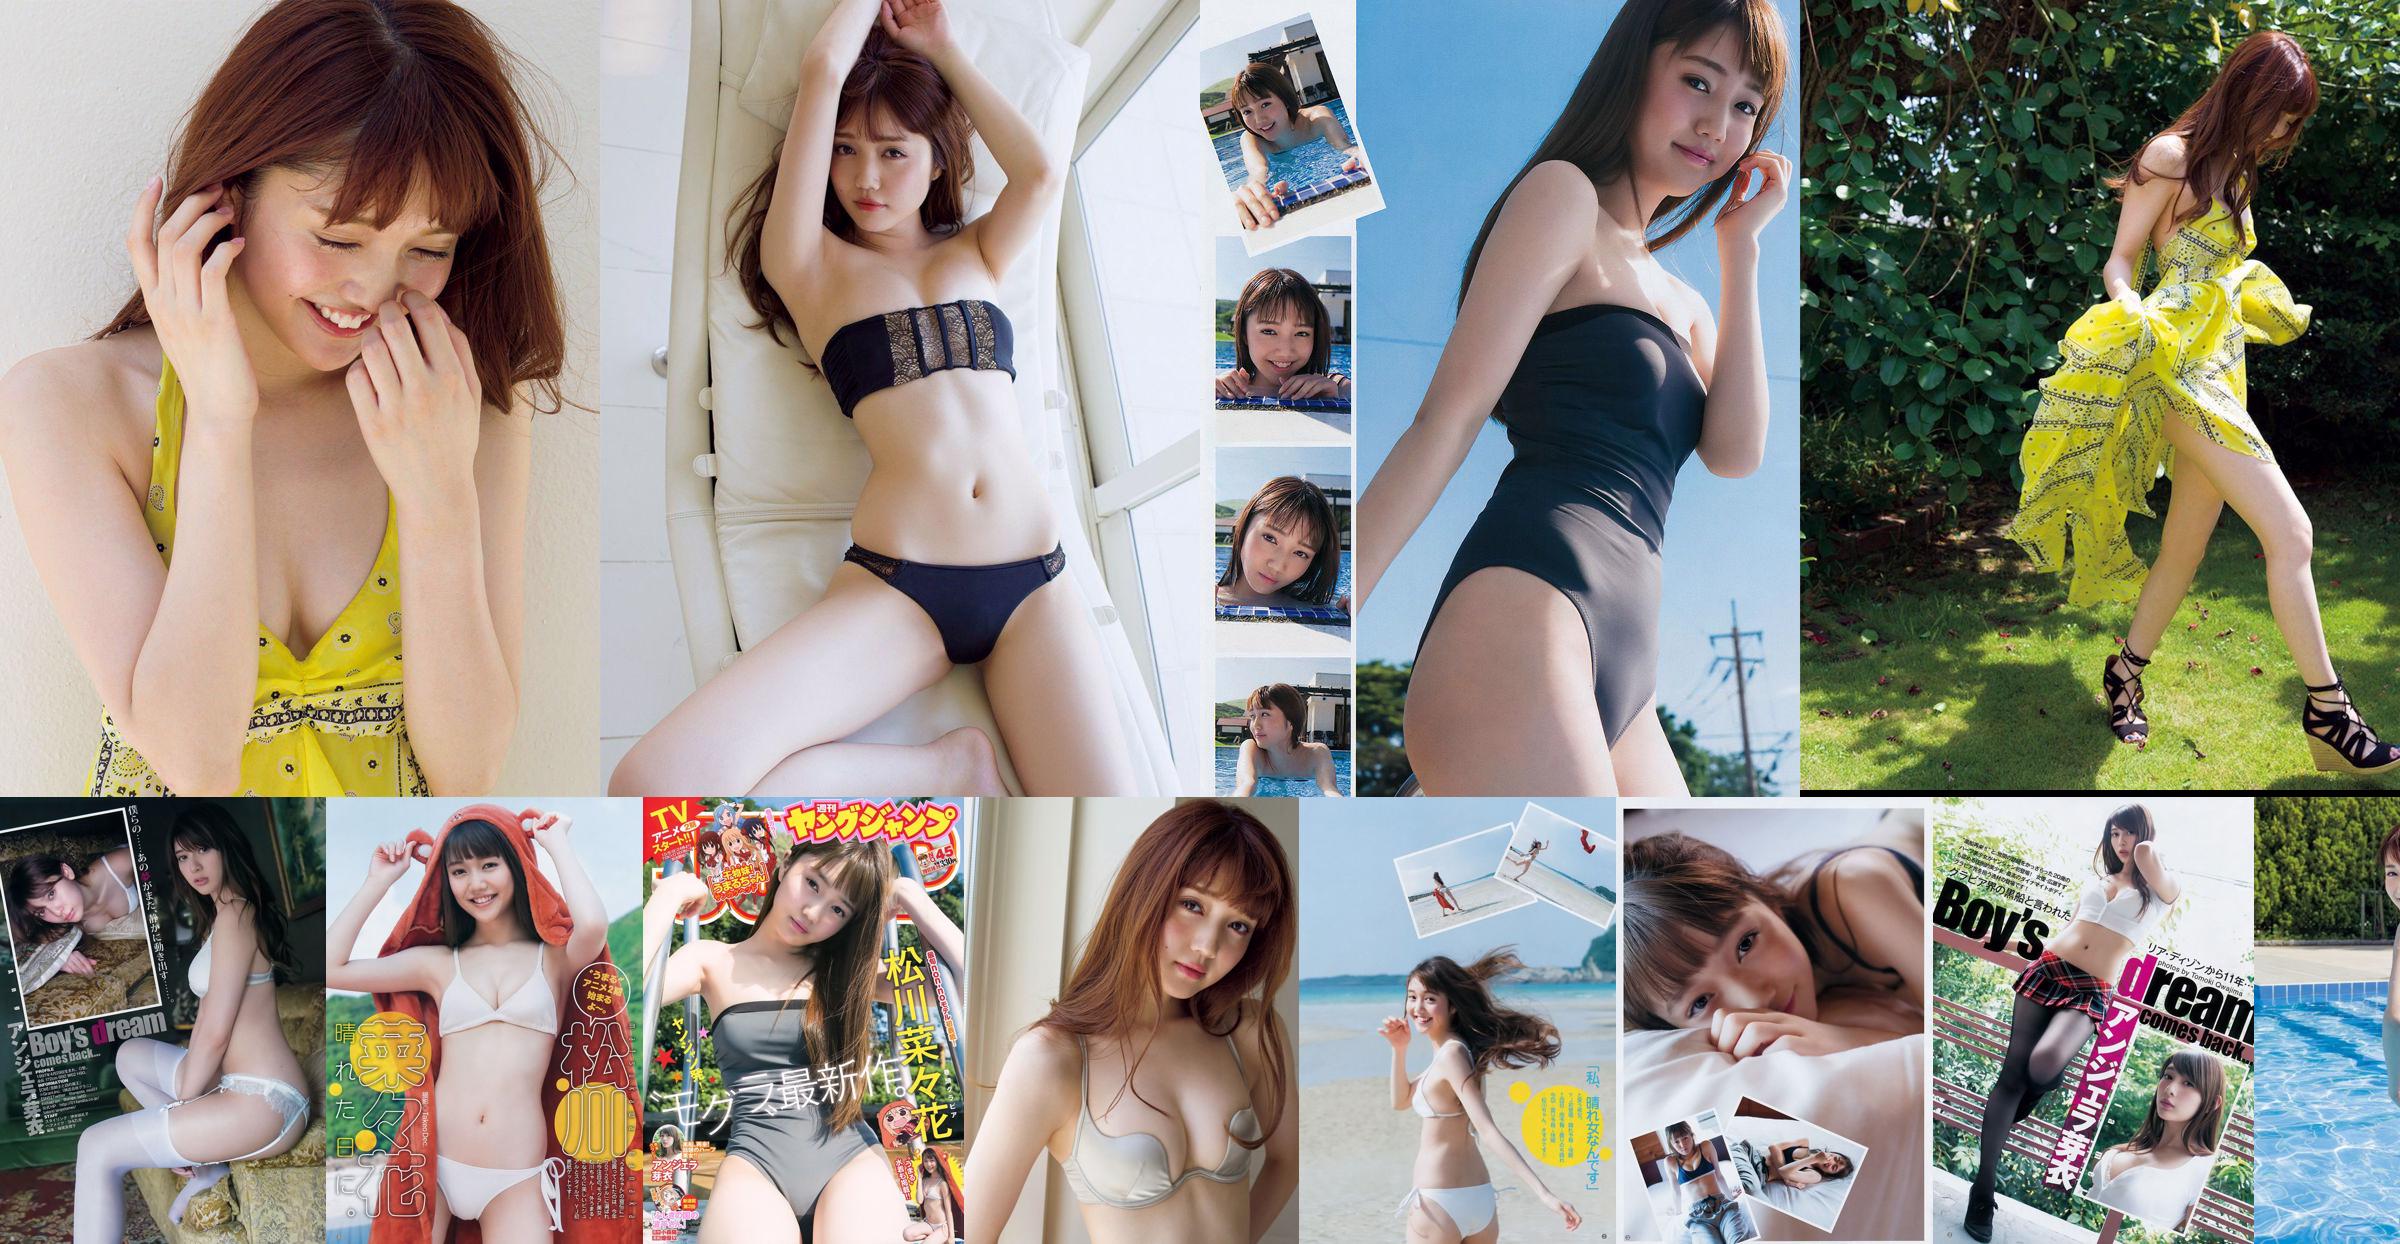 [THỨ SÁU] Nanaka Matsukawa << Người mẫu nổi tiếng và người mẫu áo tắm hẹn hò gợi cảm tuyệt vời ở tuổi 20 (có video) >> Ảnh No.7e13d5 Trang 1